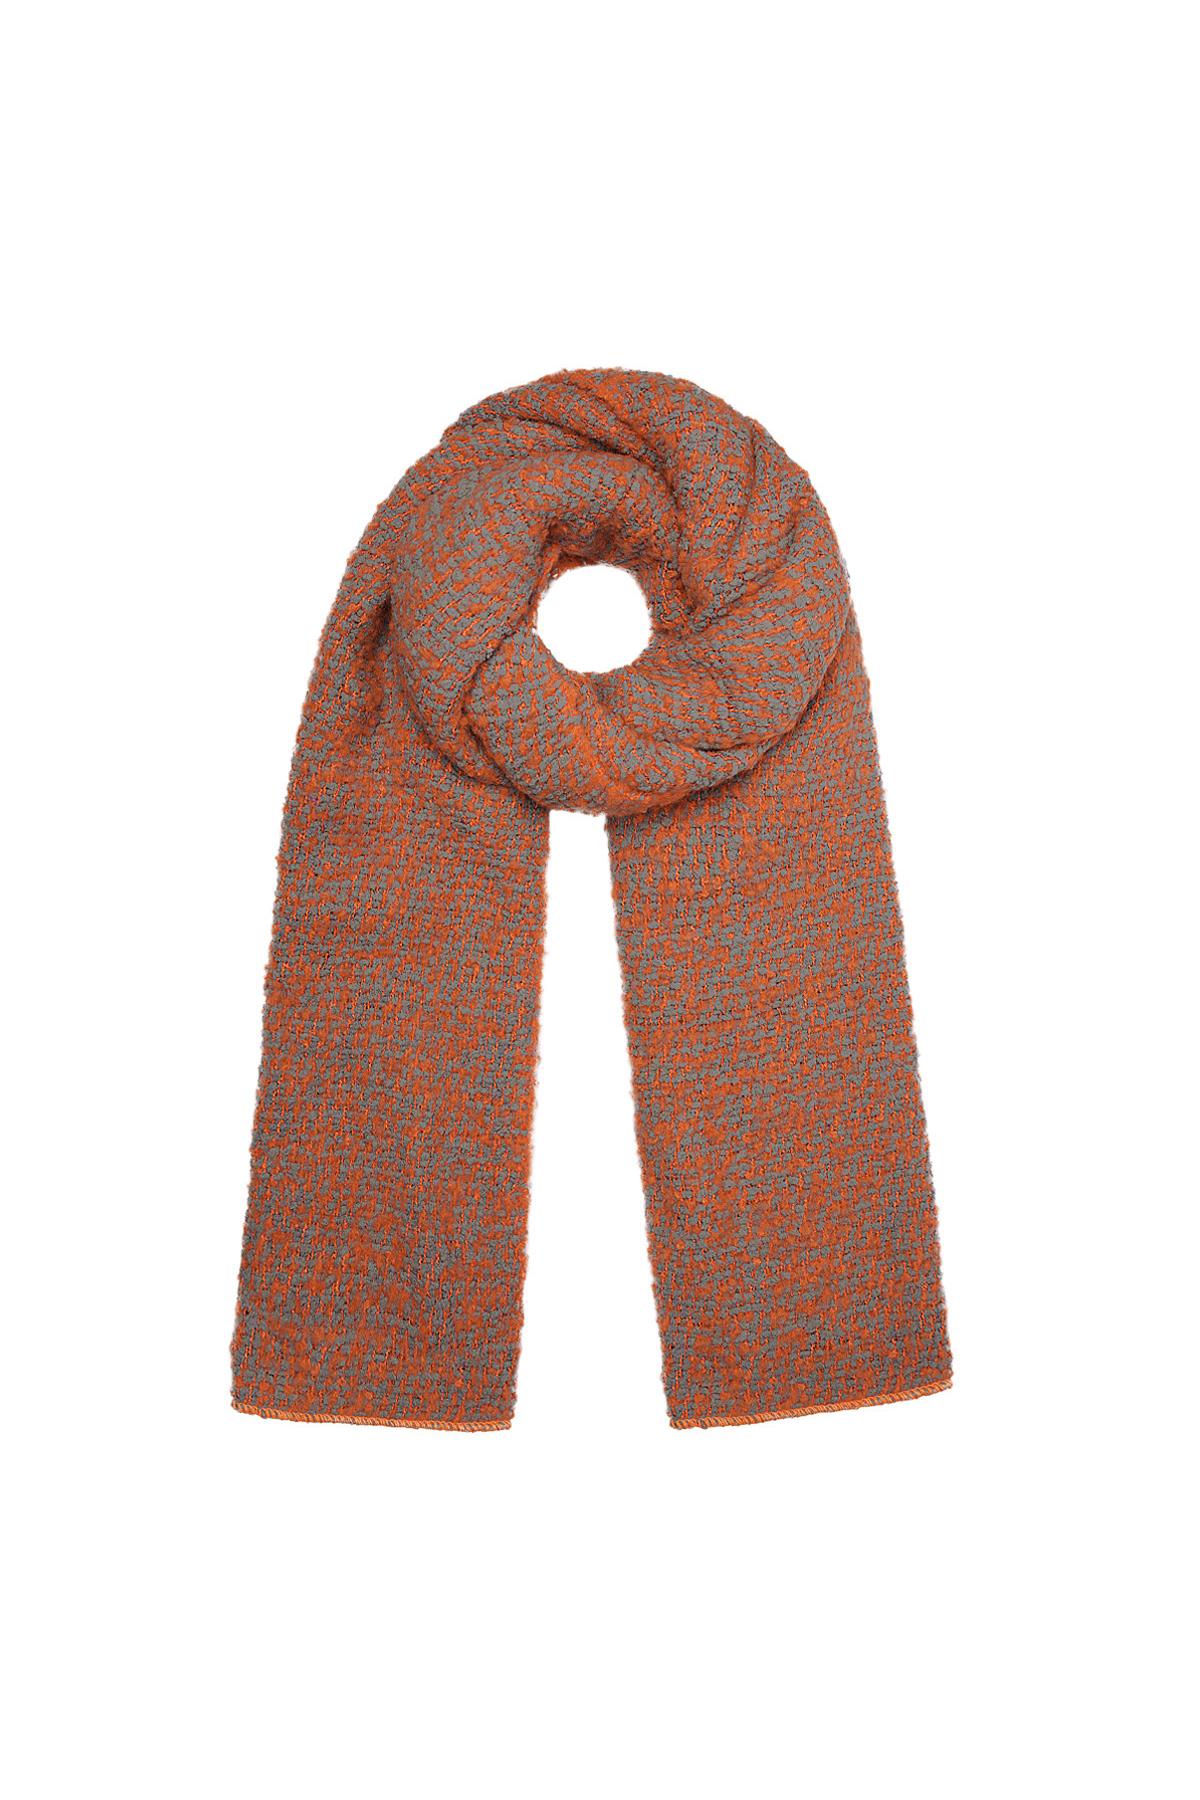 Sjaal met reliëf stof oranje/grijs Polyester h5 